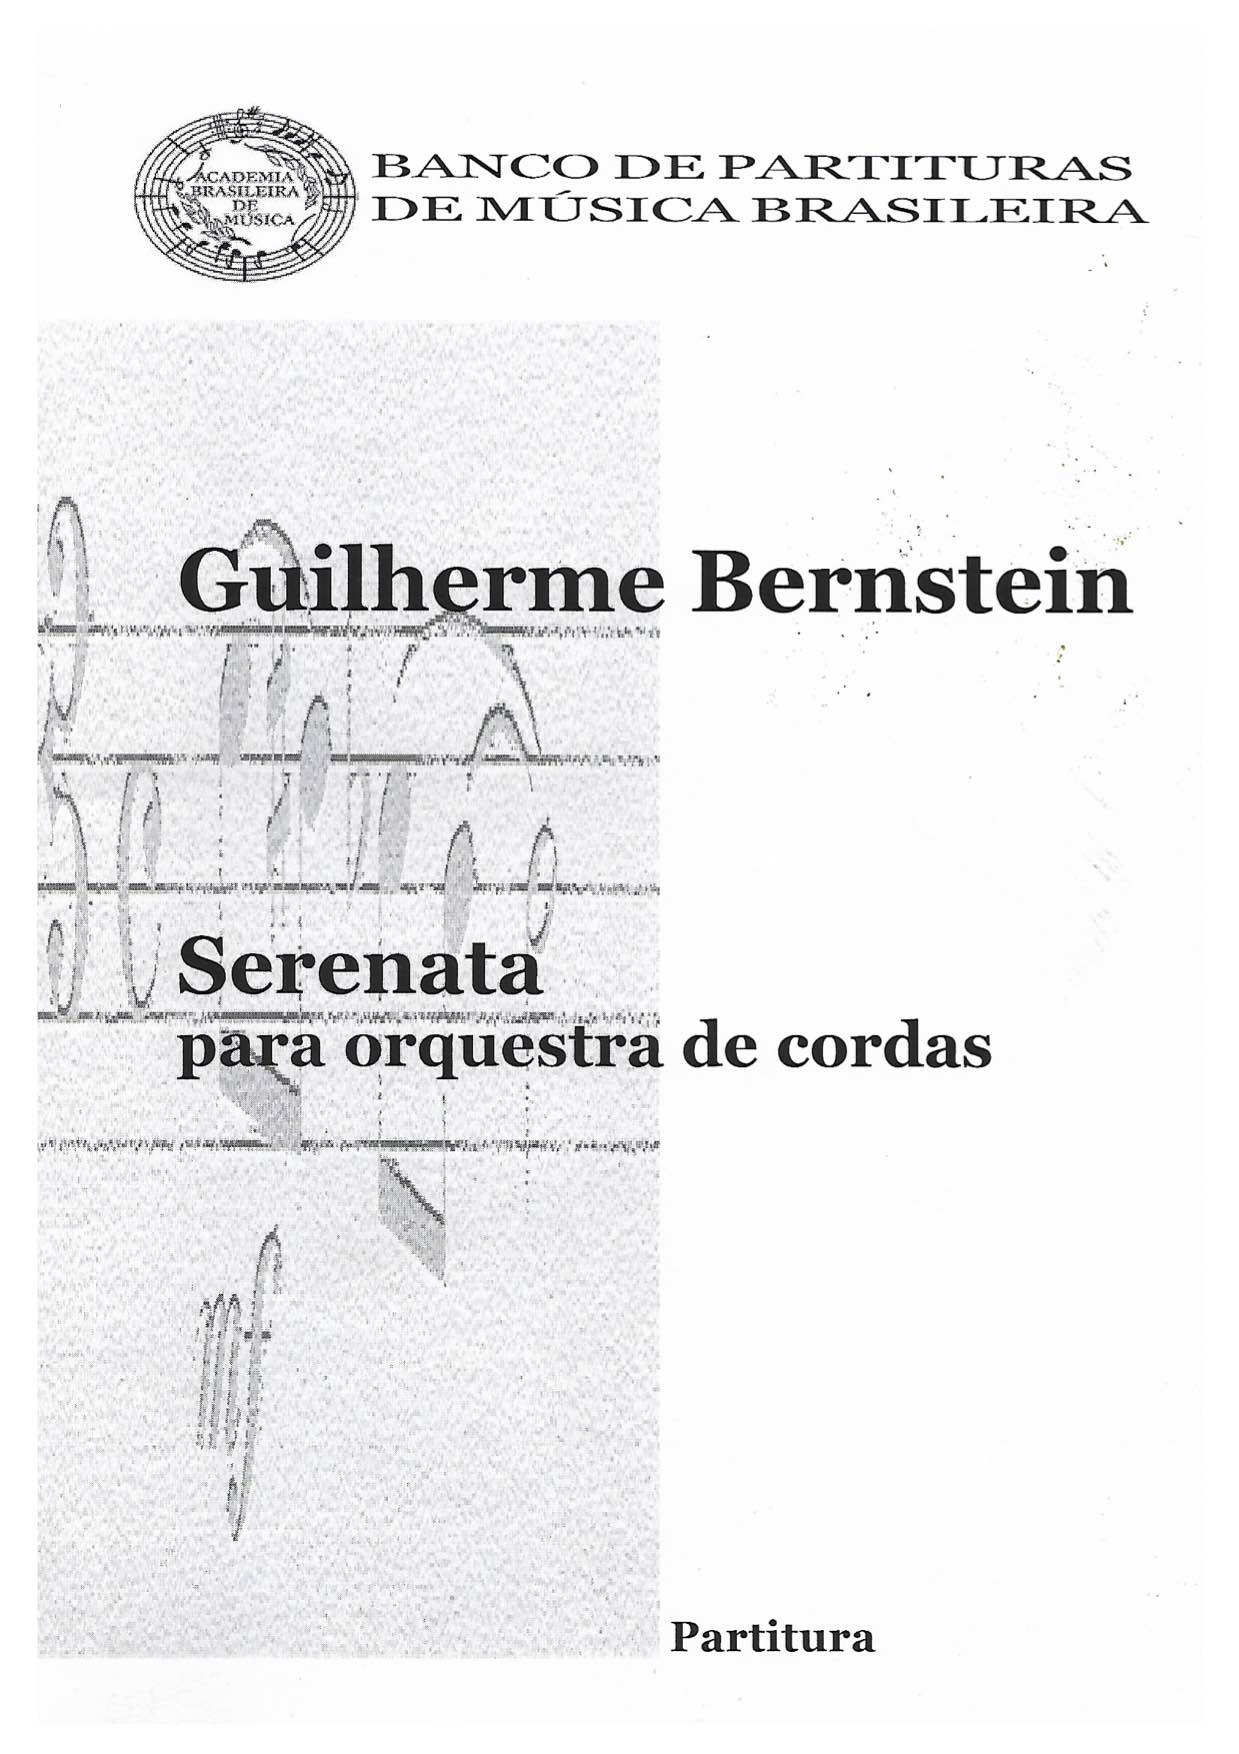 Serenata - sample cover